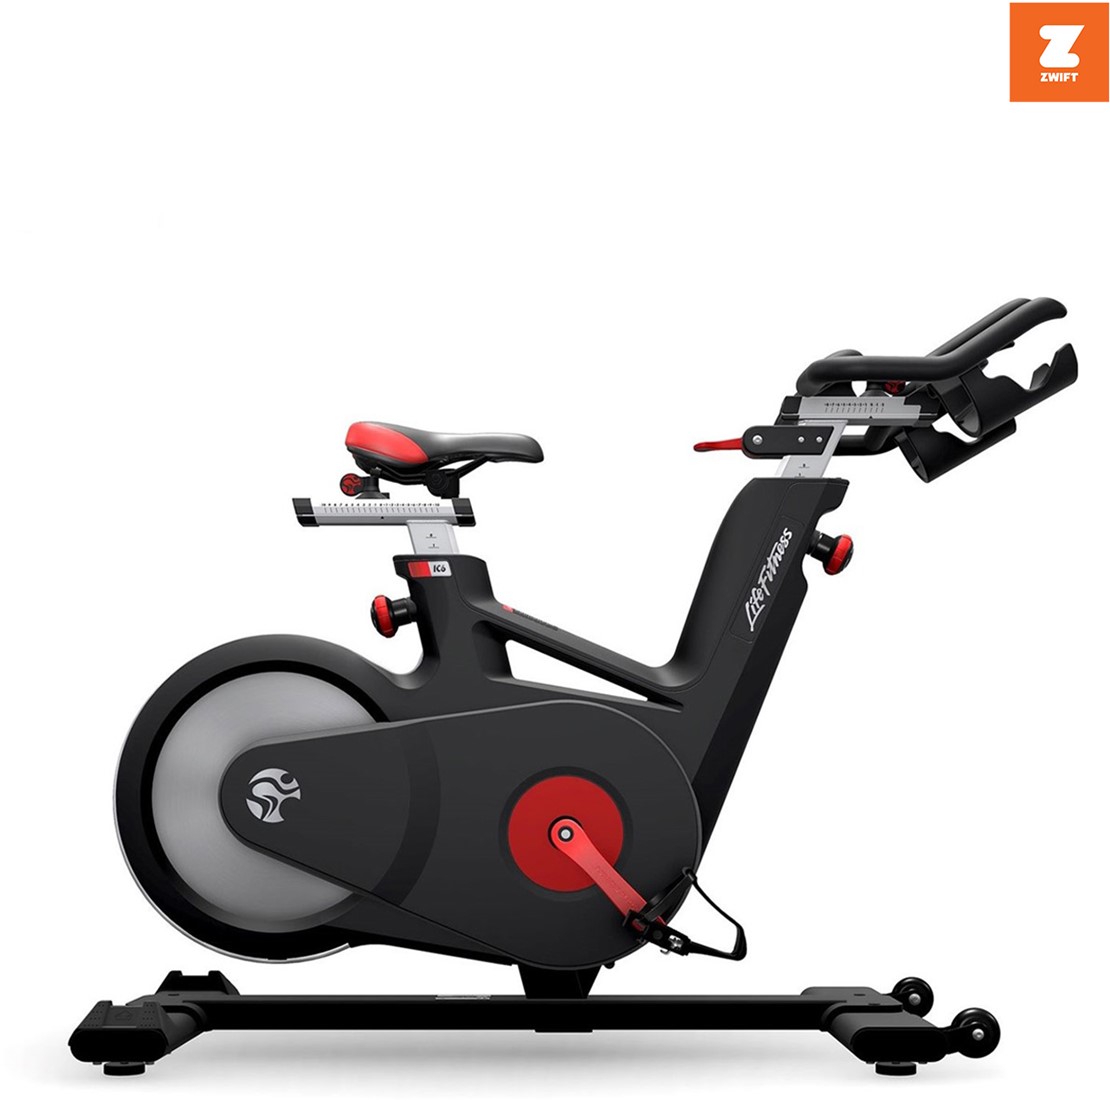 Huiswerk maken uitlokken partij Life Fitness Tomahawk Indoor Bike IC6 Spinningfiets- Zwift Compatible |  Fitwinkel.be